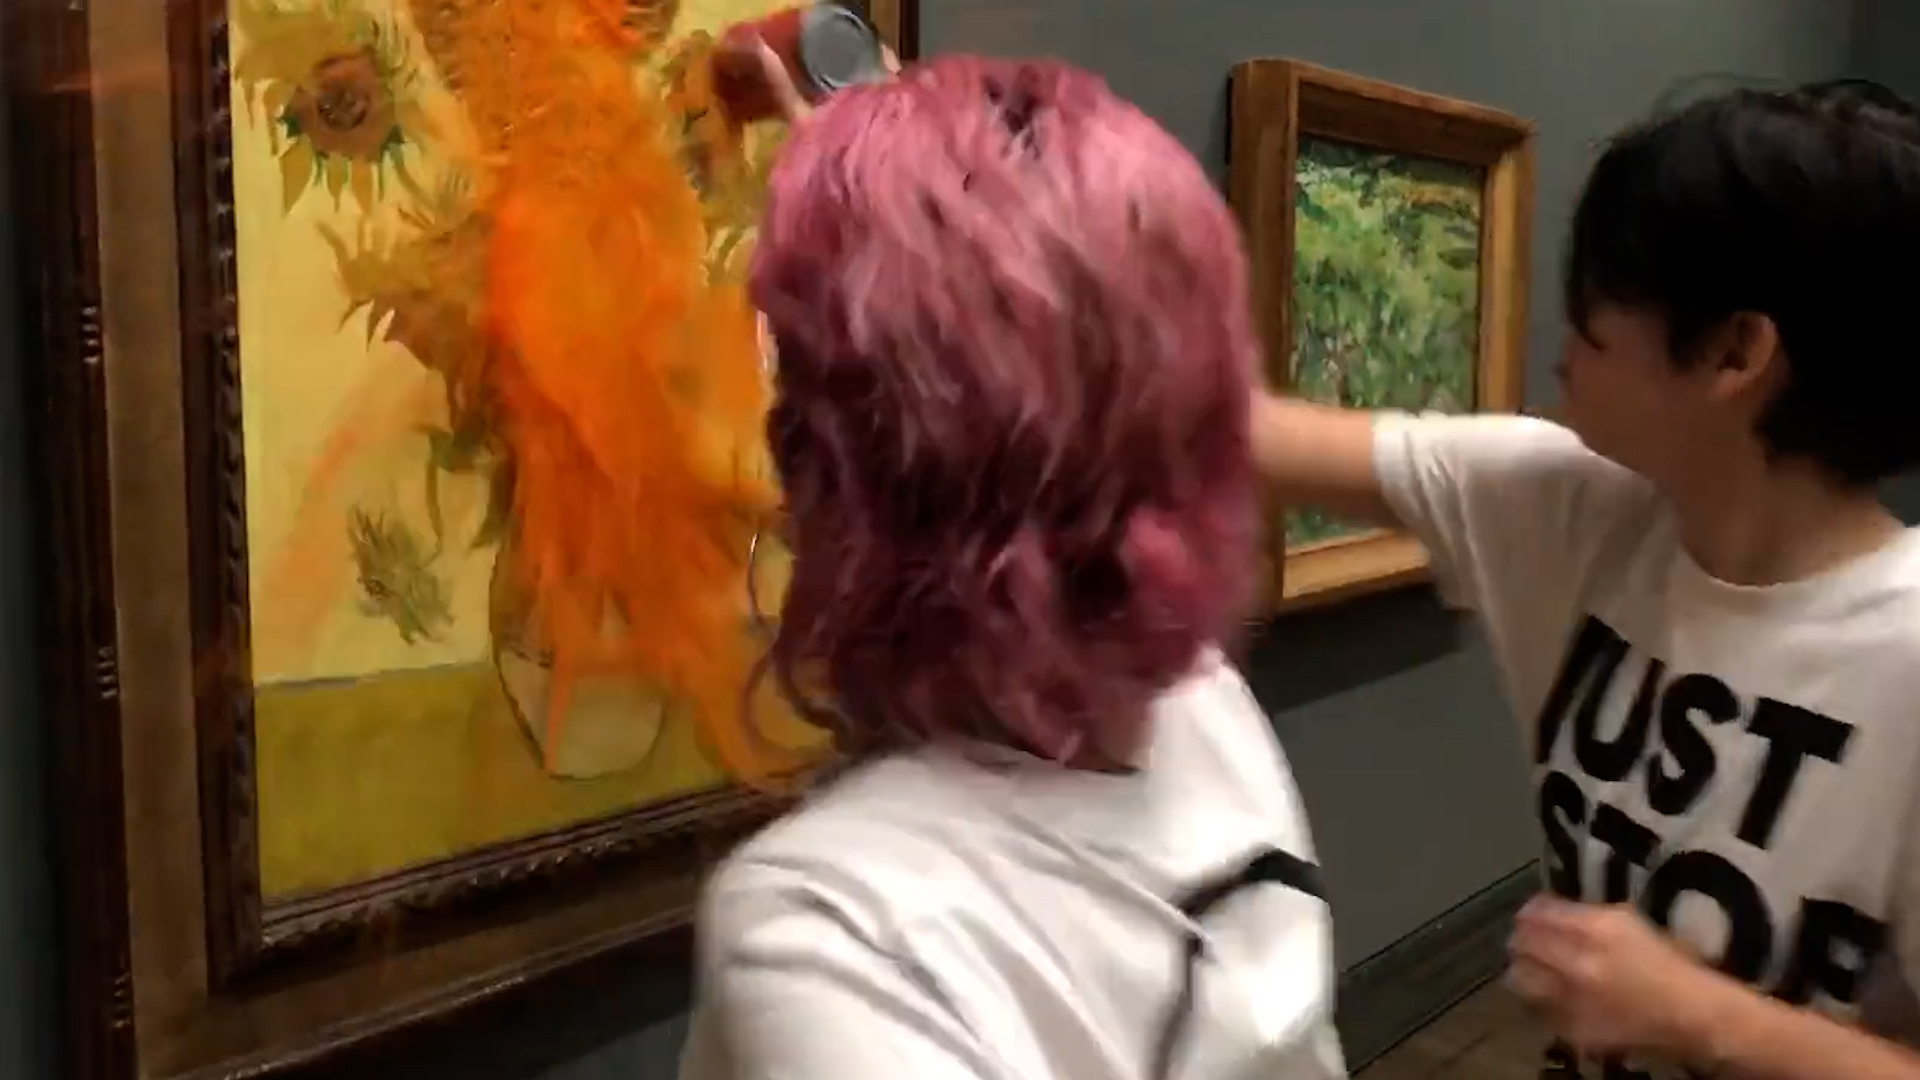 Ecologistas arrojaron sopa sobre “Los girasoles” de Van Gogh